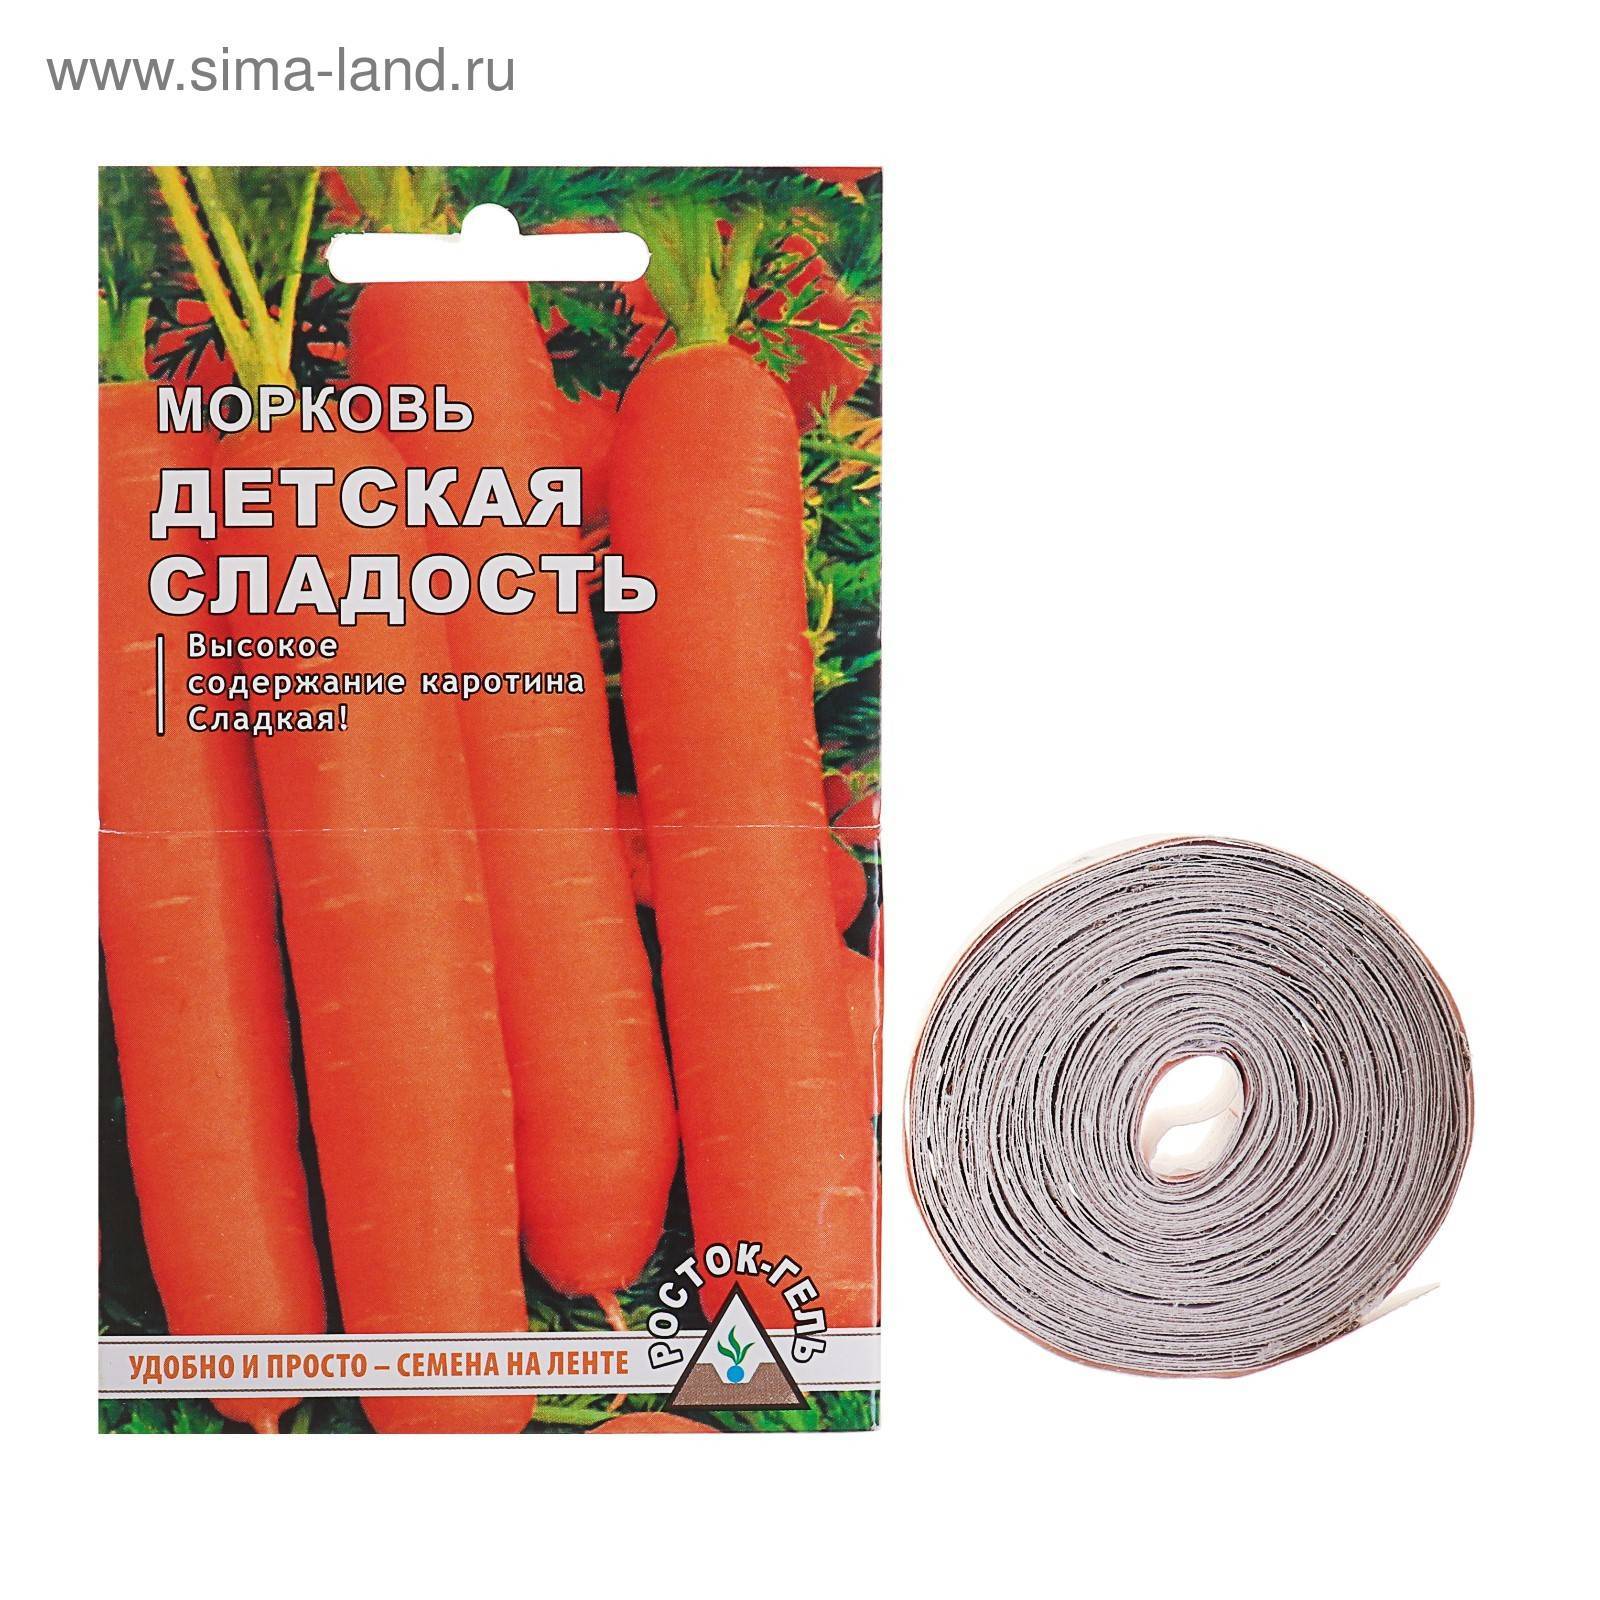 Лучшие сорта моркови для сибири: ранние, поздние, сладкие, крупные